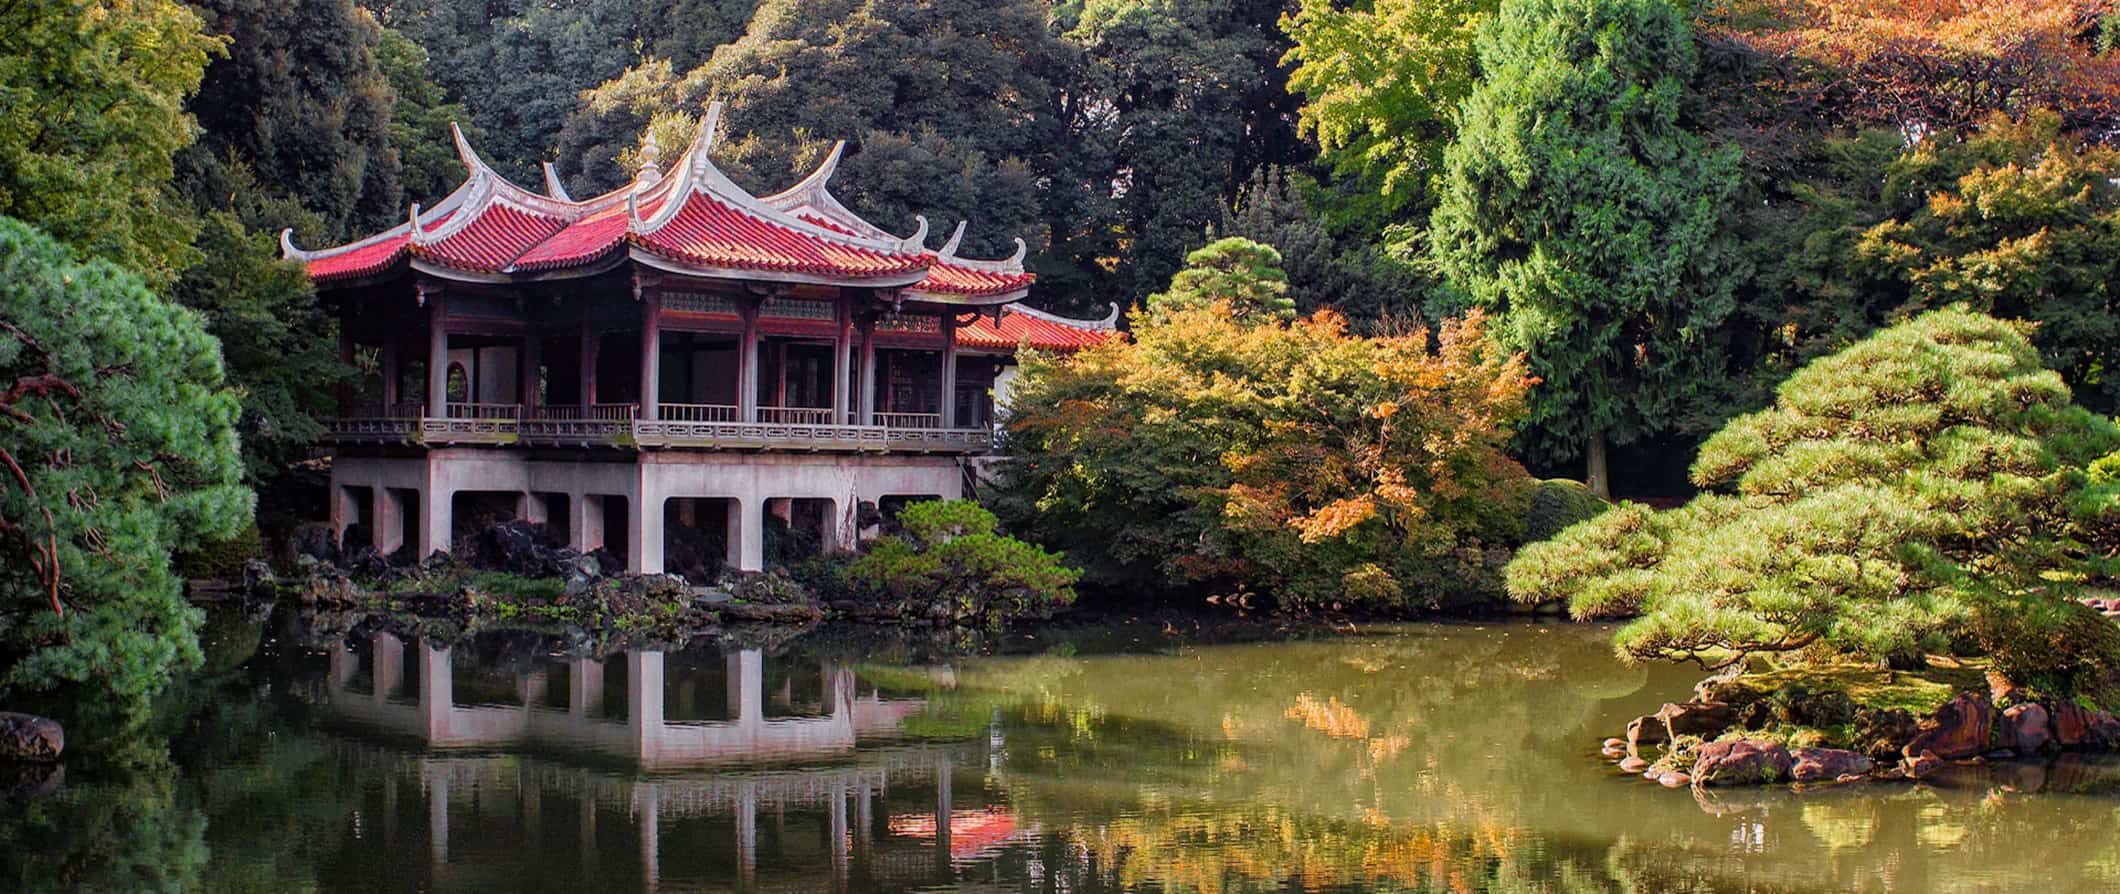 Templo antigo no Japão cercado por árvores exuberantes por um pequeno lago